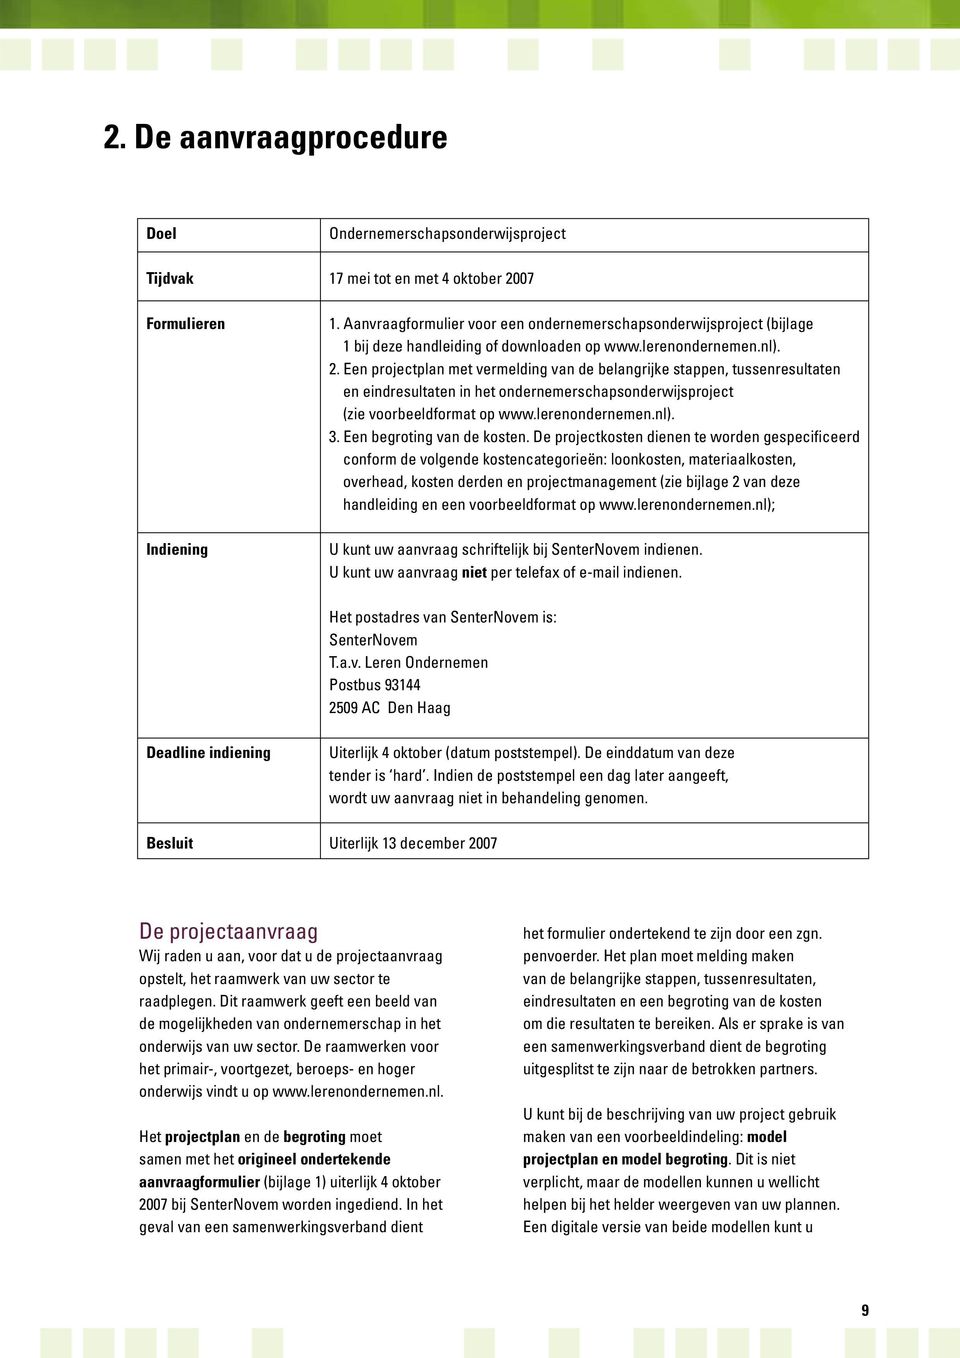 Een projectplan met vermelding van de belangrijke stappen, tussenresultaten en eindresultaten in het ondernemerschapsonderwijsproject (zie voorbeeldformat op www.lerenondernemen.nl). 3.